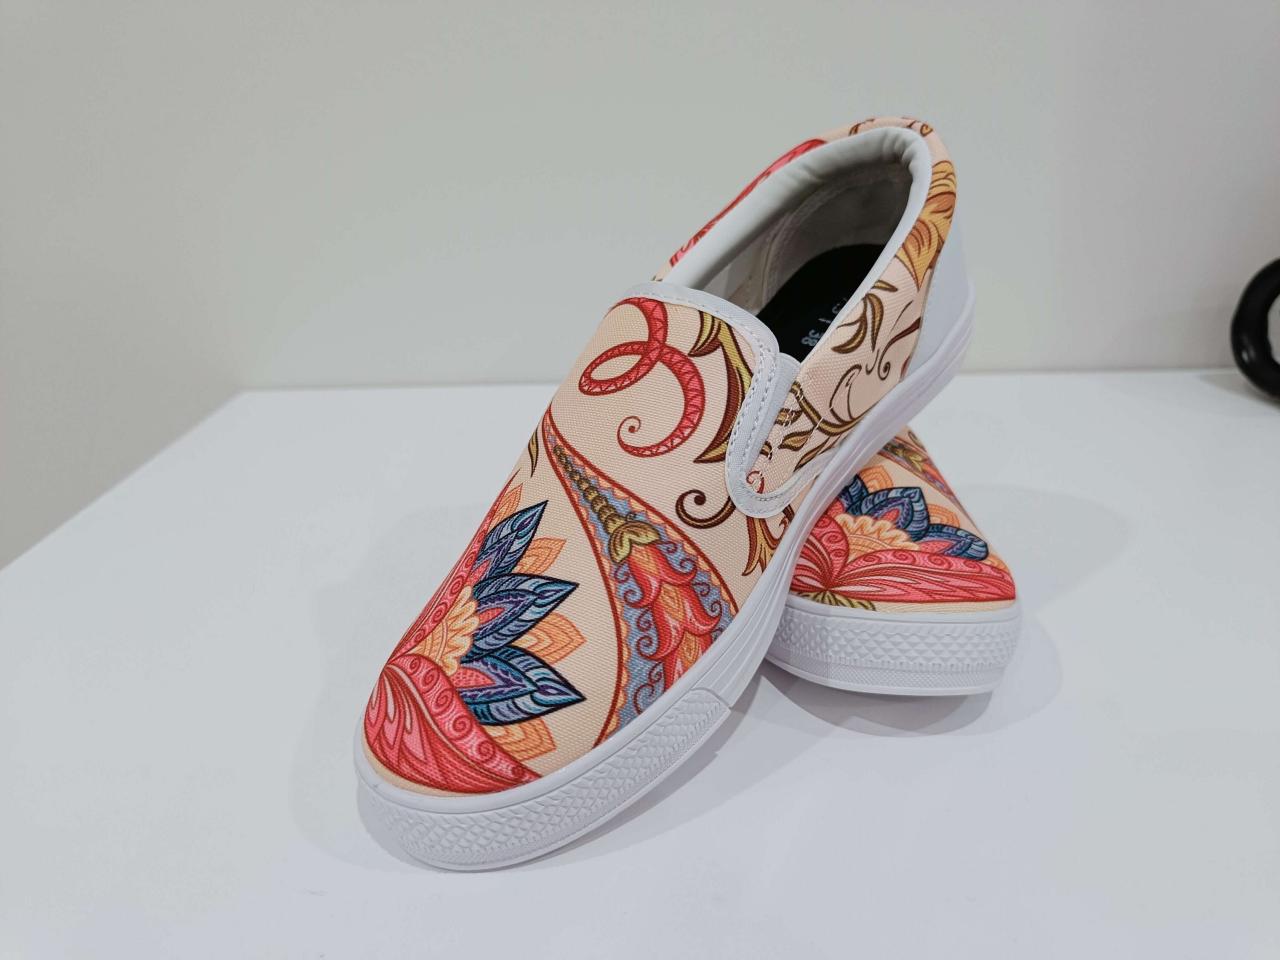 Royal Paisley Slipon Shoes, Handmade Women Shoes, Slip On Shoes, Dream Shoes